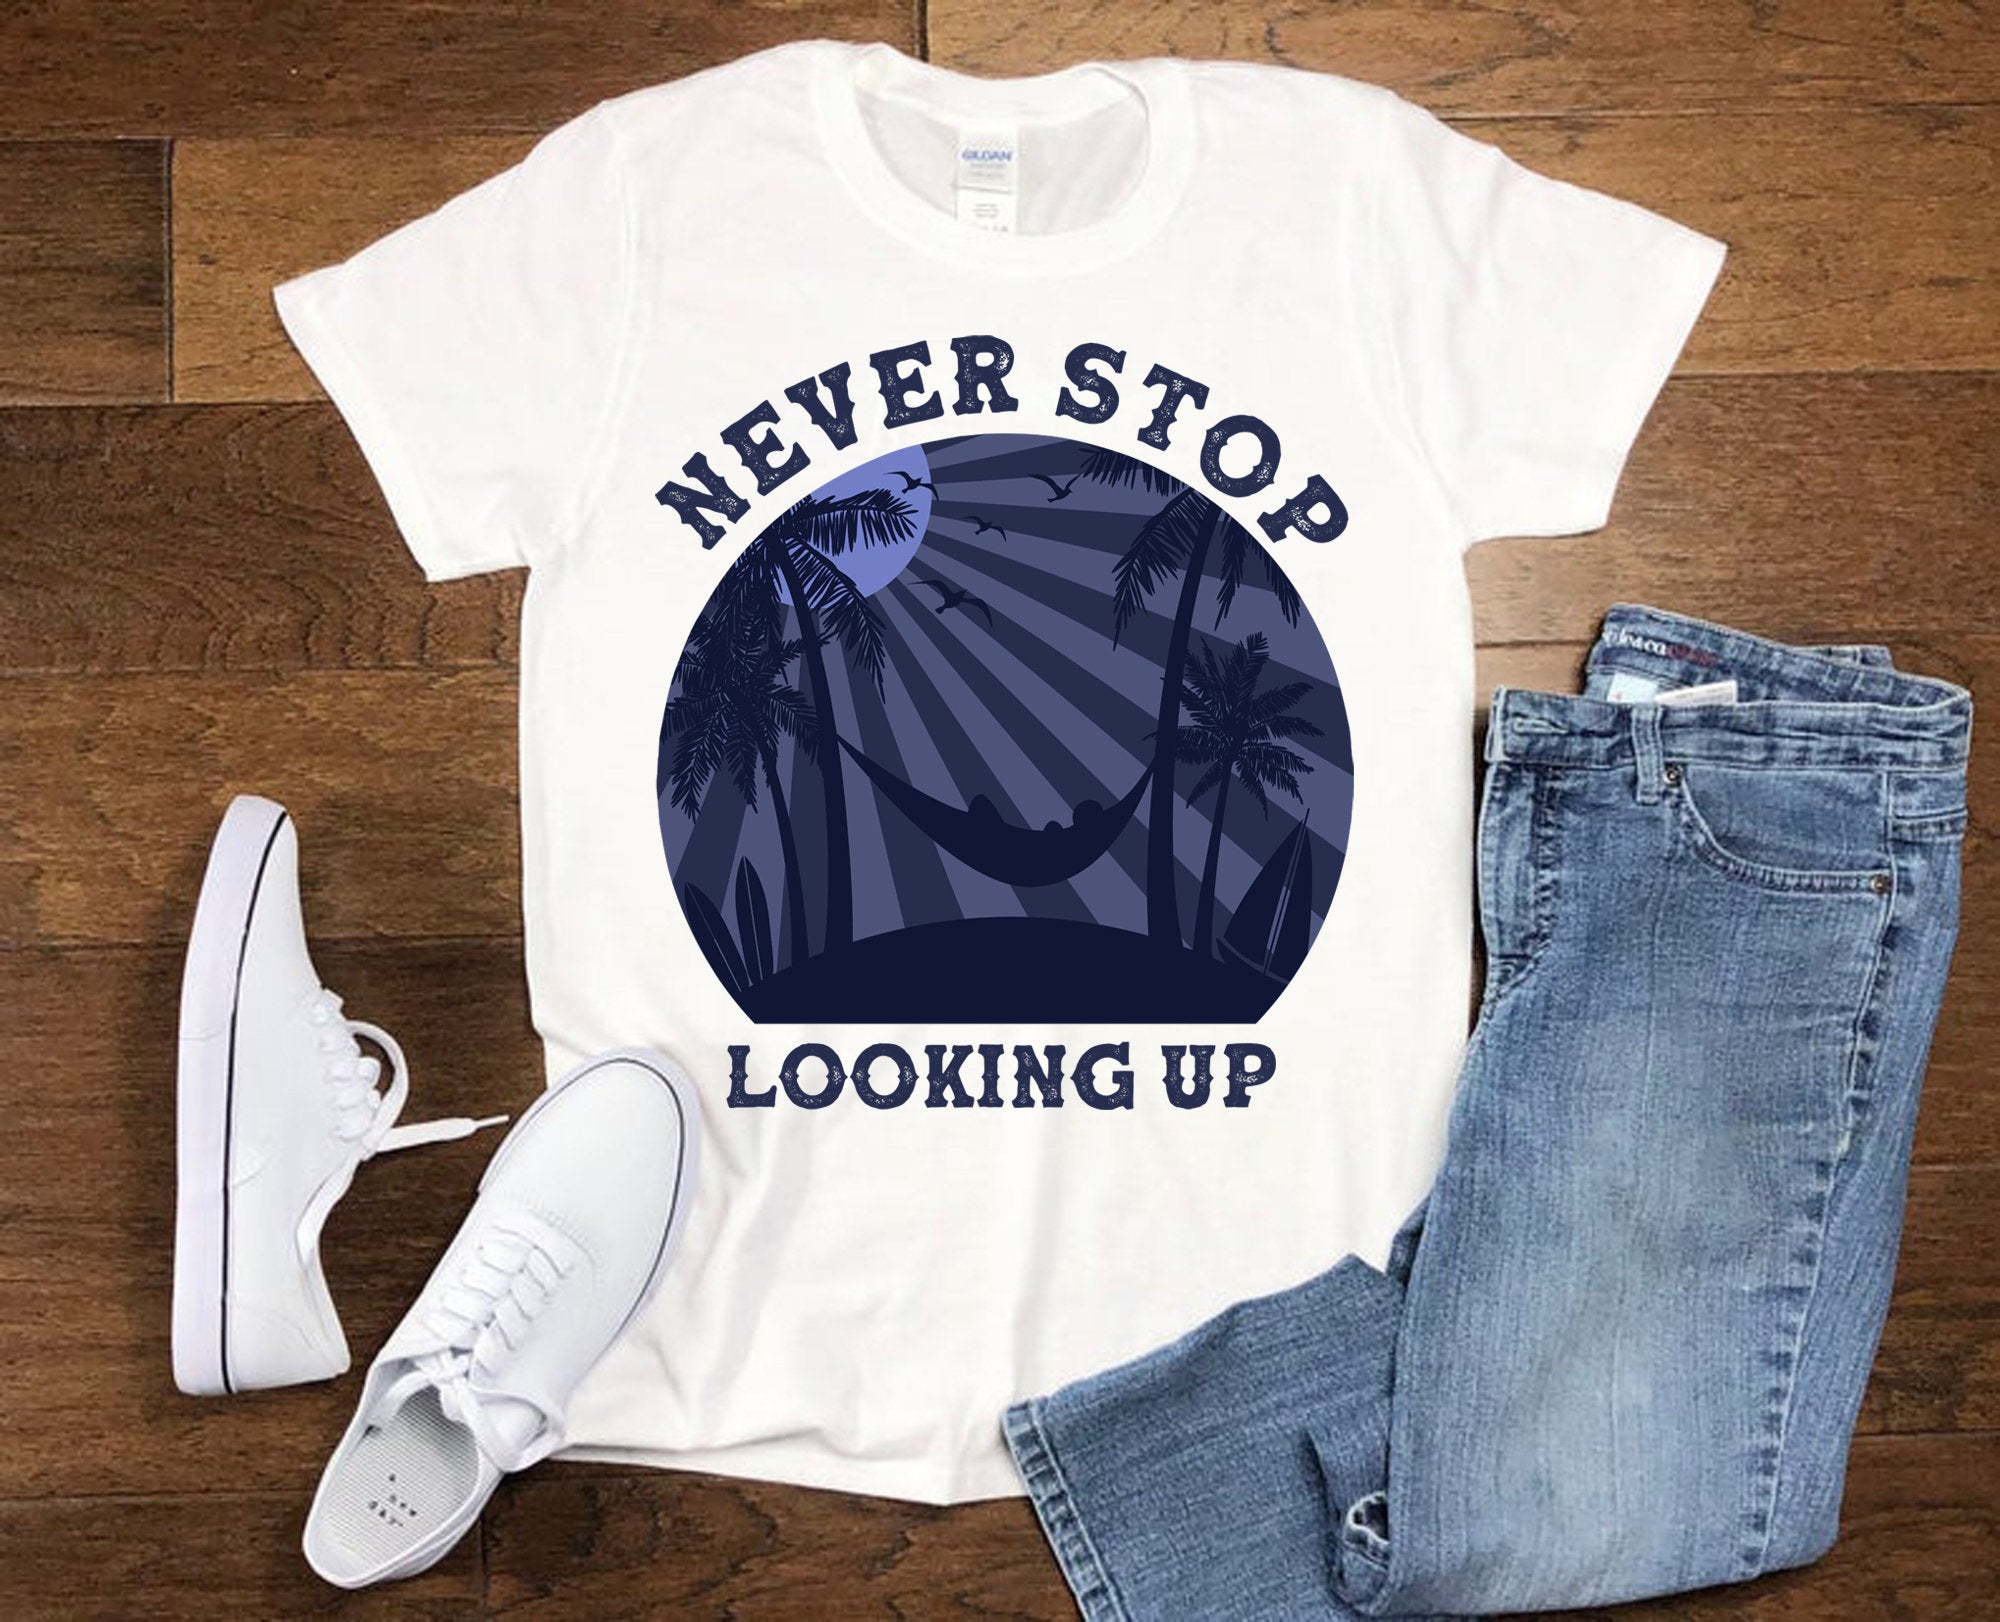 Never Stop Looking Up シャツ、レトロ T シャツ、バケーション シャツ、ハンモック T シャツ、リラックス シャツ、モチベーションを高めるギフト、インスピレーションを与える T シャツ - plusminusco.com